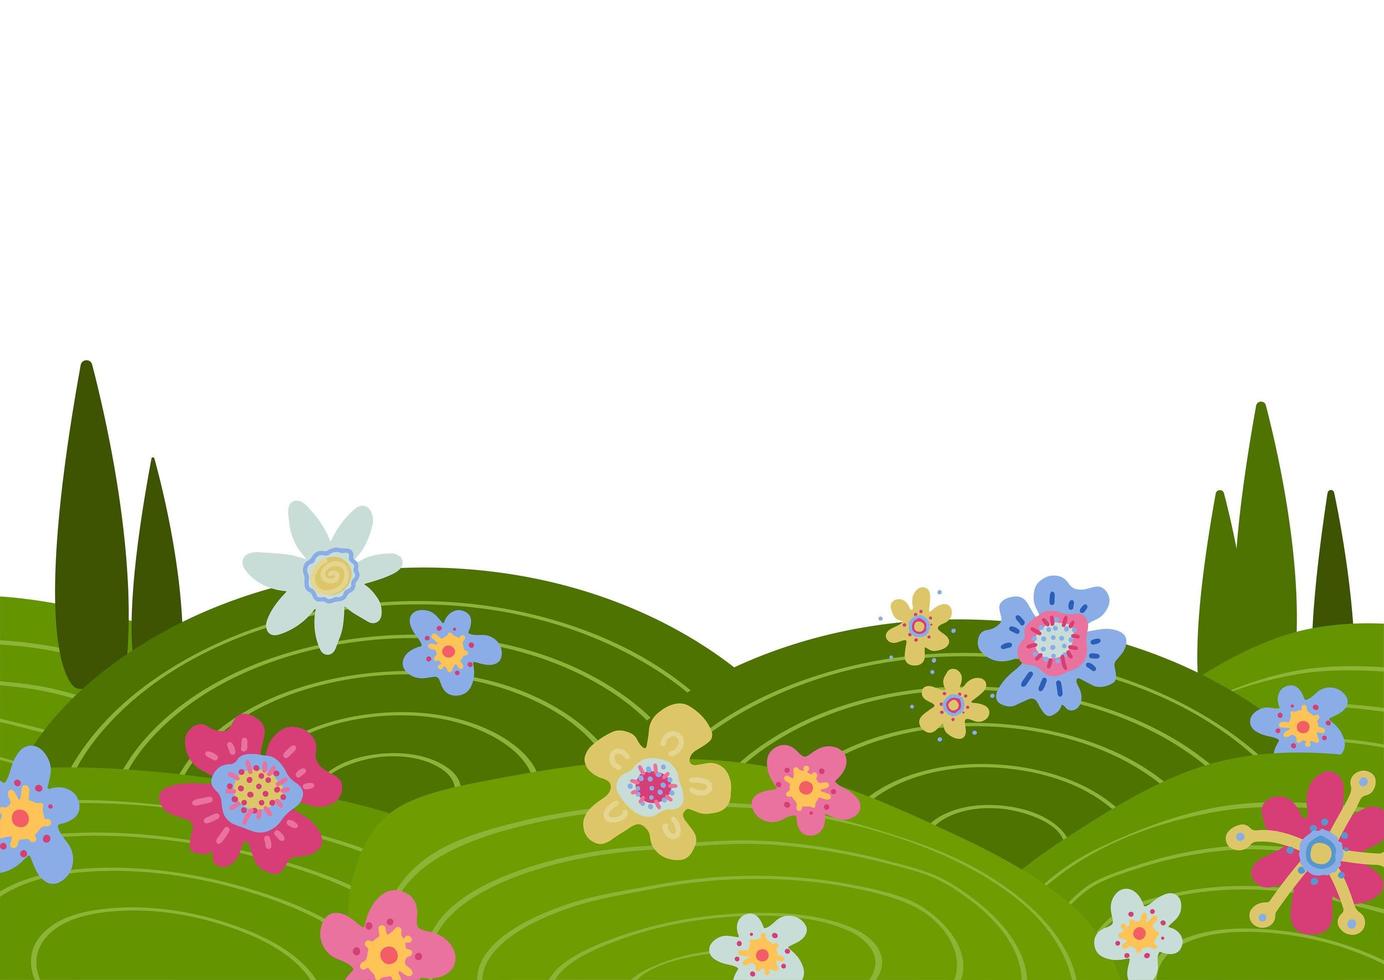 fond de doodle avec des collines vertes et des fleurs dessinées à la main. nature créative illustration dessinée à la main d'un beau paysage d'été ou de printemps. illustration vectorielle plane avec un espace blanc pour le texte. vecteur